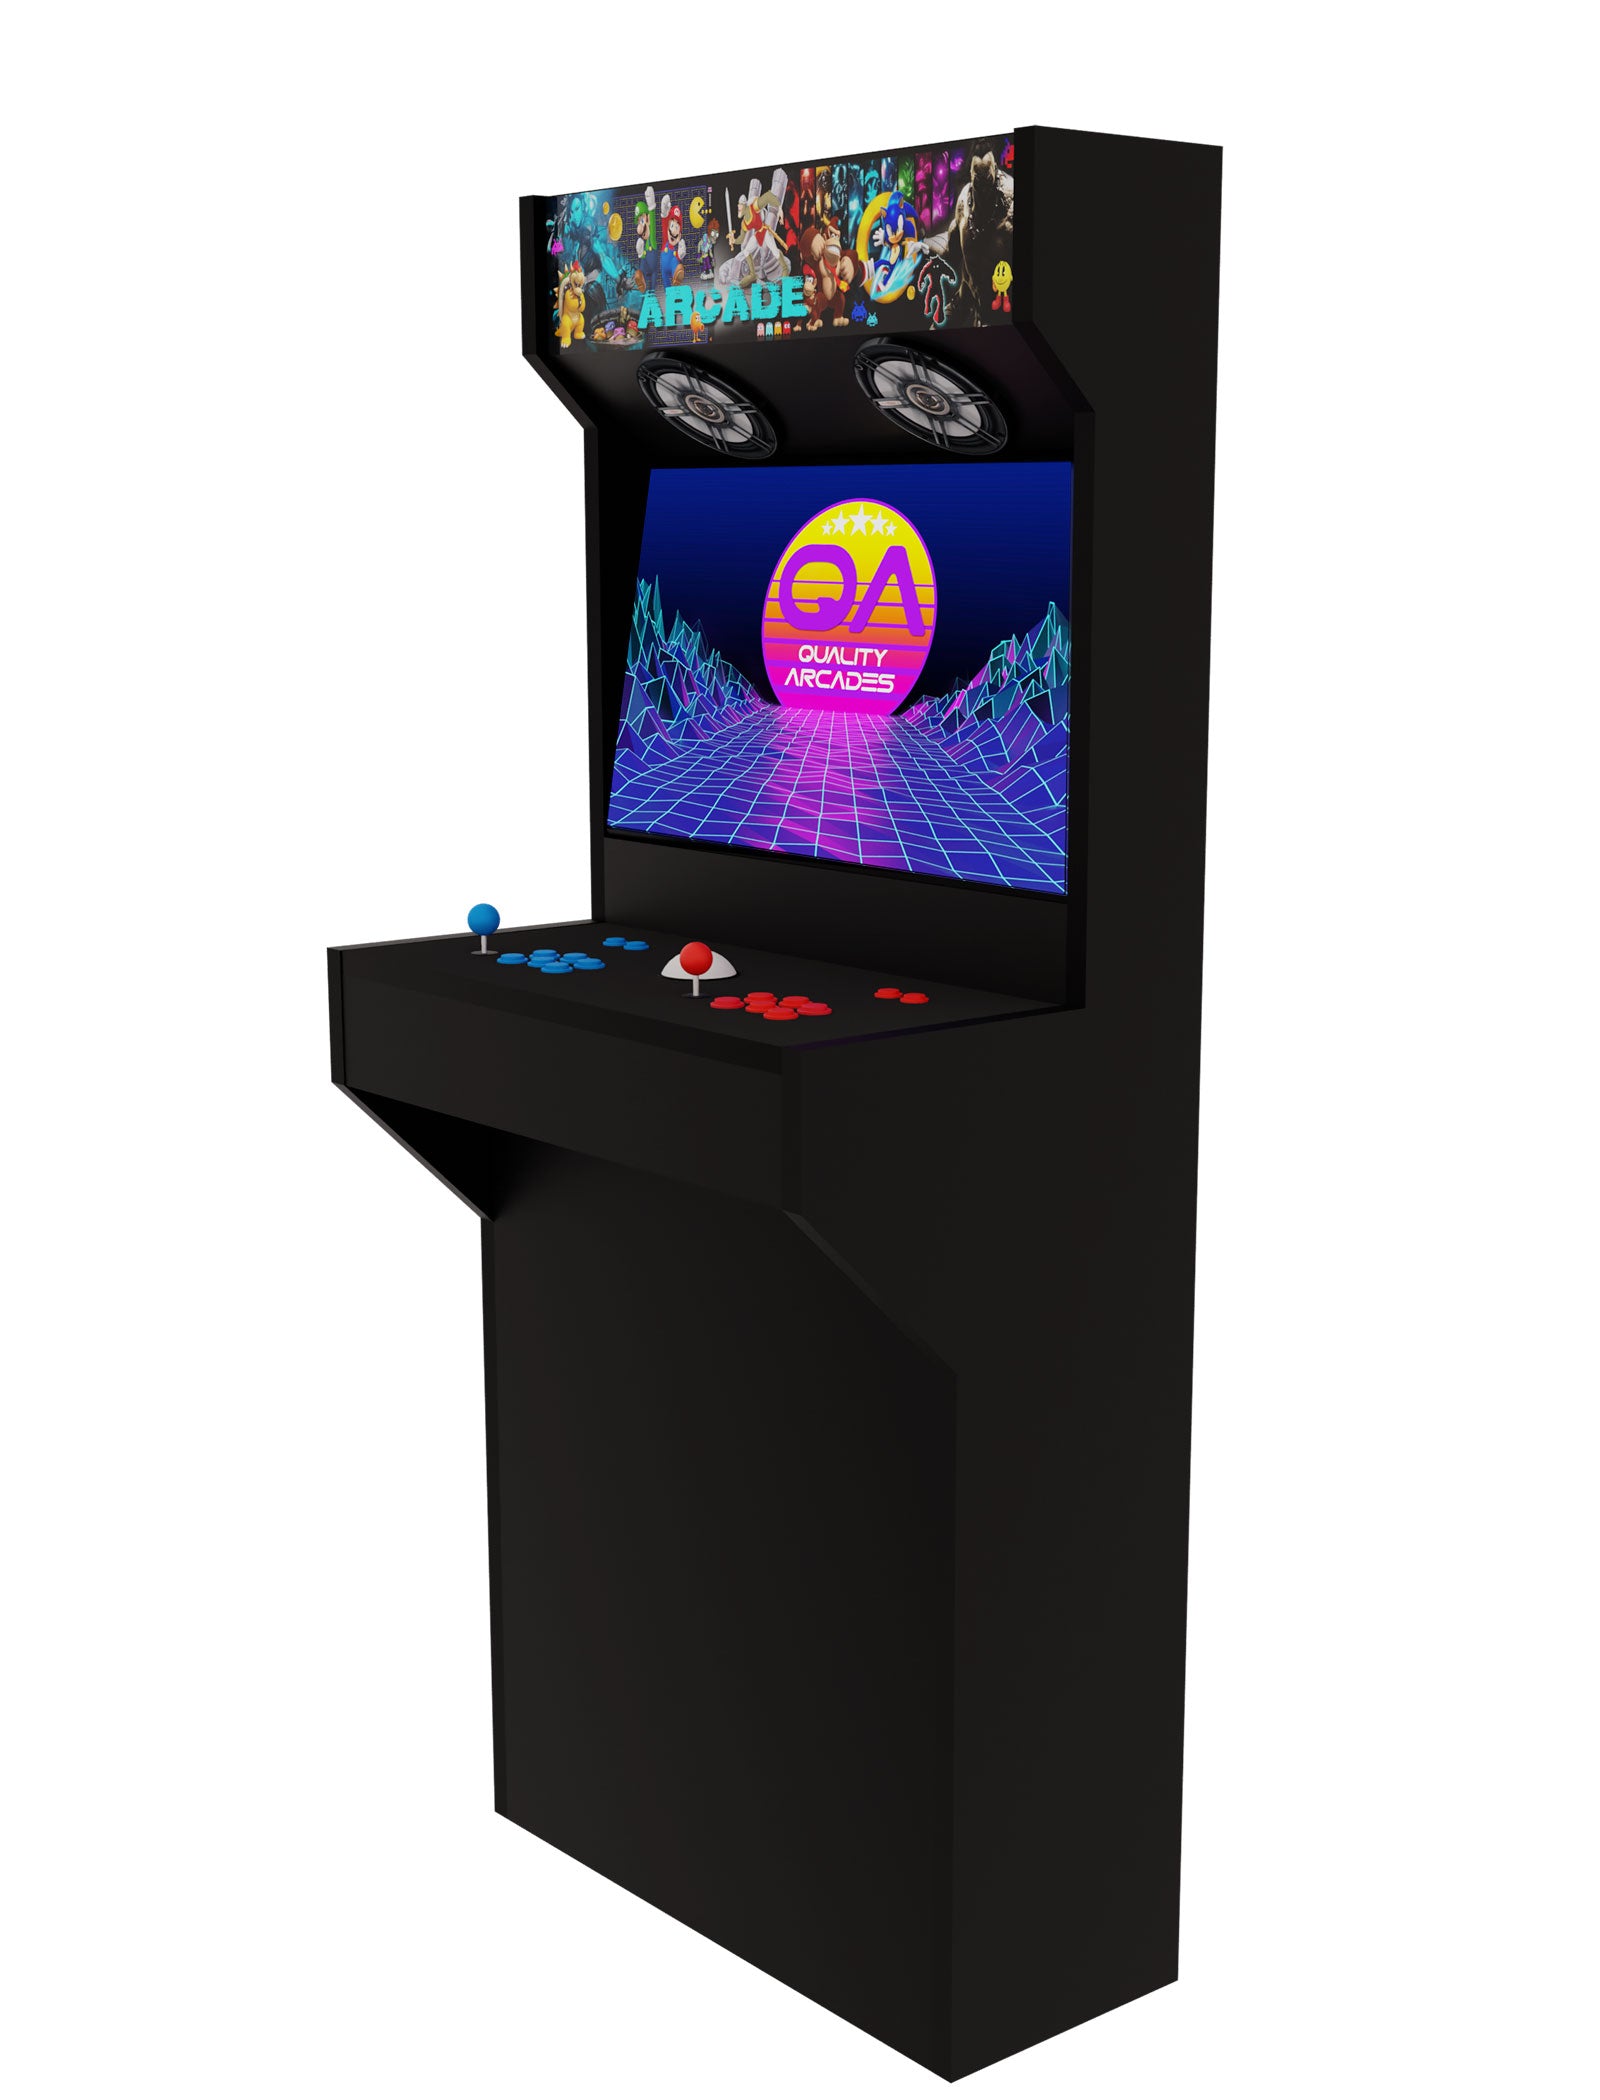 2 Player Arcade Machine - Basic